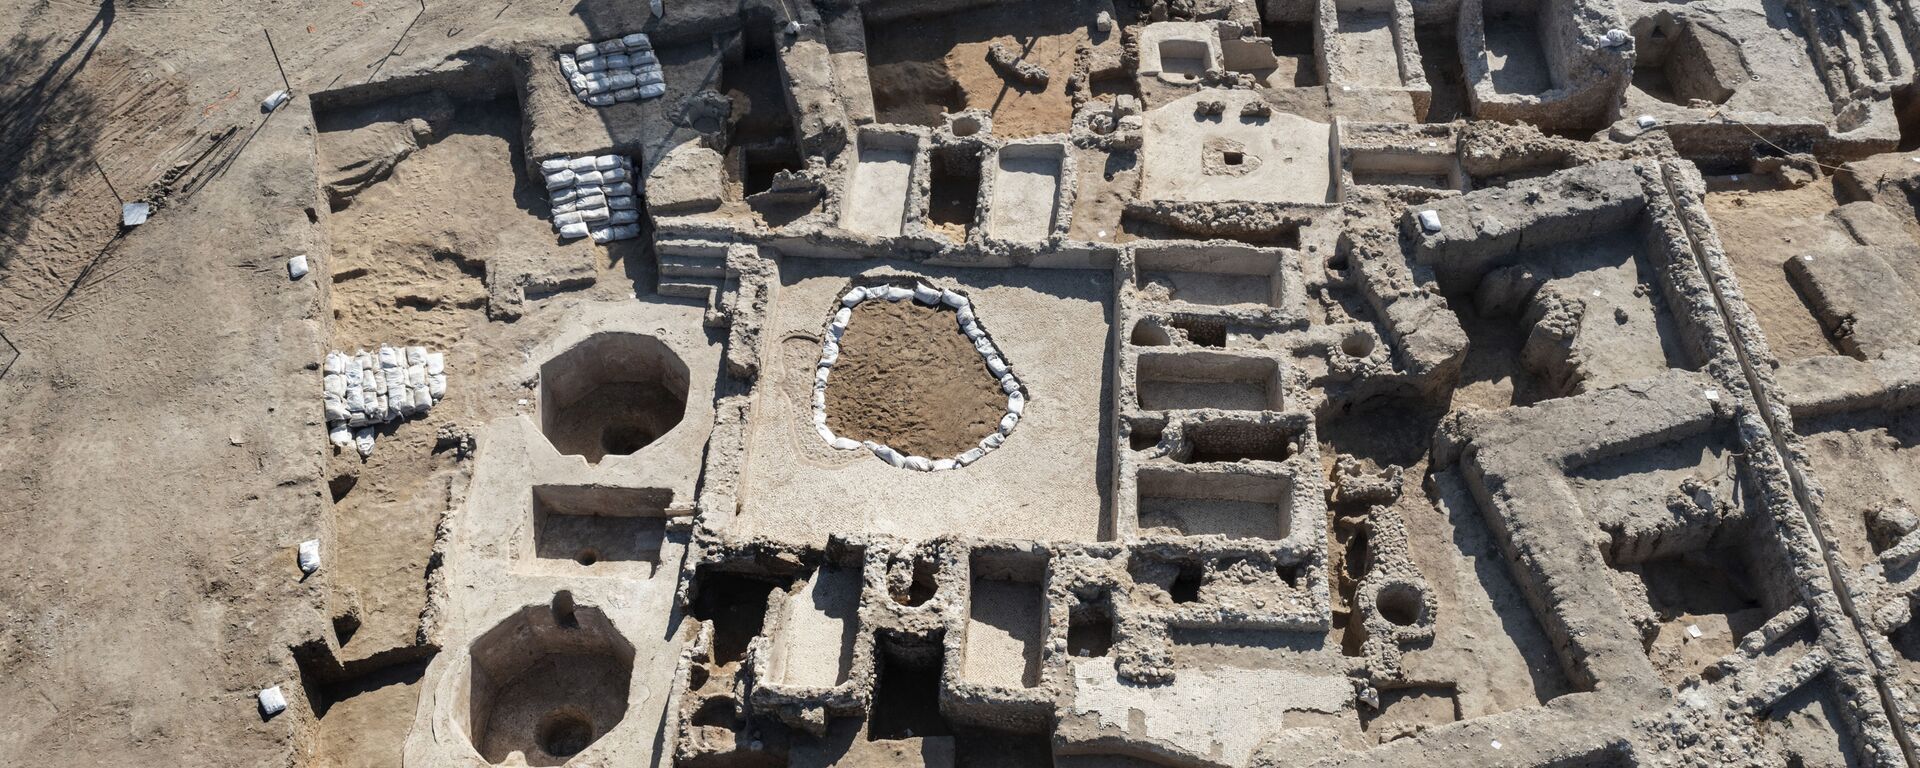 Древний винодельческий комплекс, построенный примерно 1500 лет назад в Явне, Израиль - Sputnik Армения, 1920, 15.10.2021